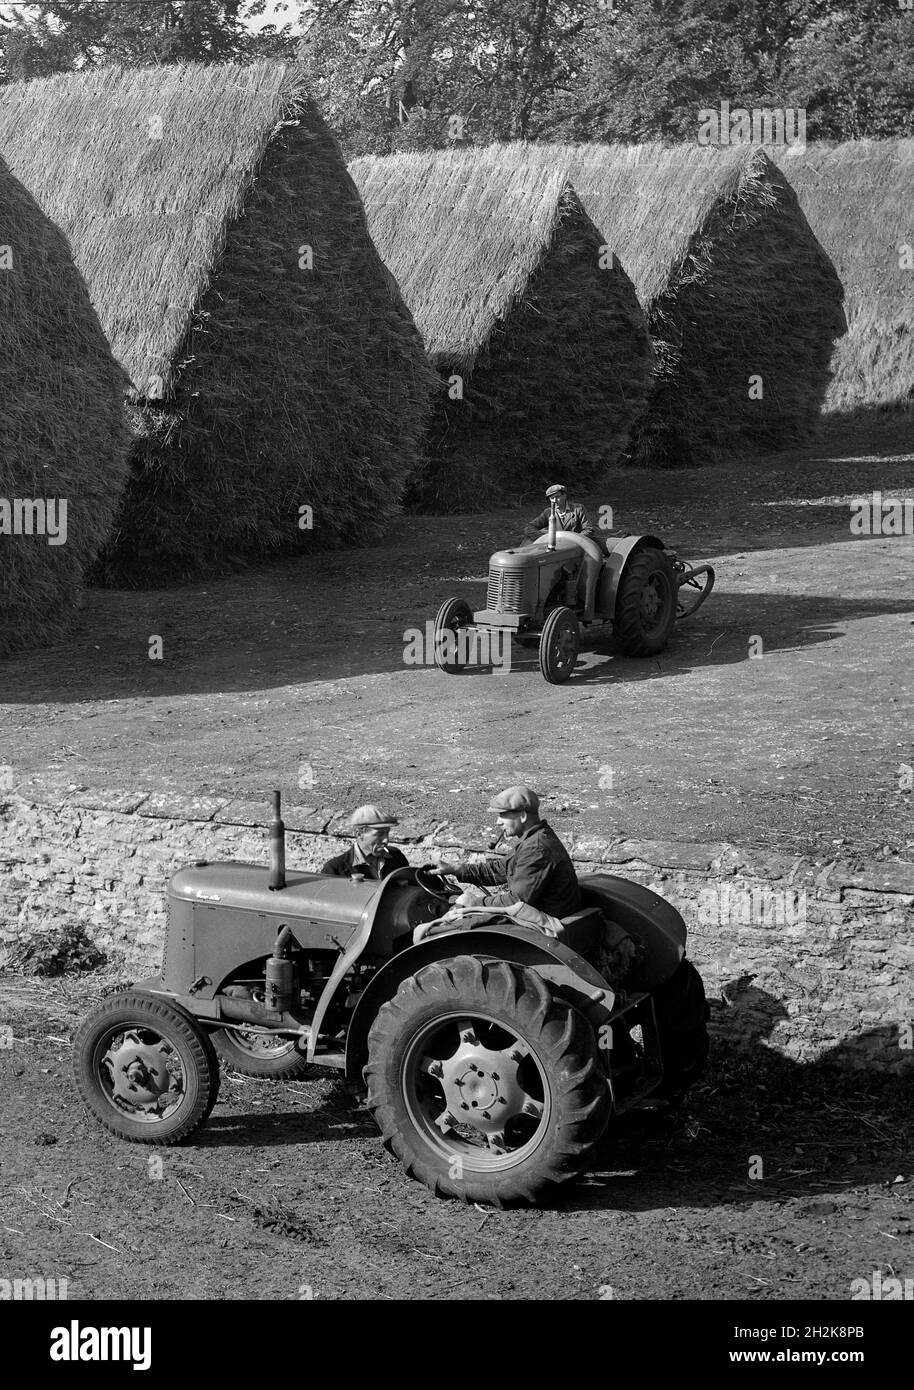 Ouvriers agricoles avec des tracteurs et des haystacks en pente Grande-Bretagne des années 1950 Banque D'Images